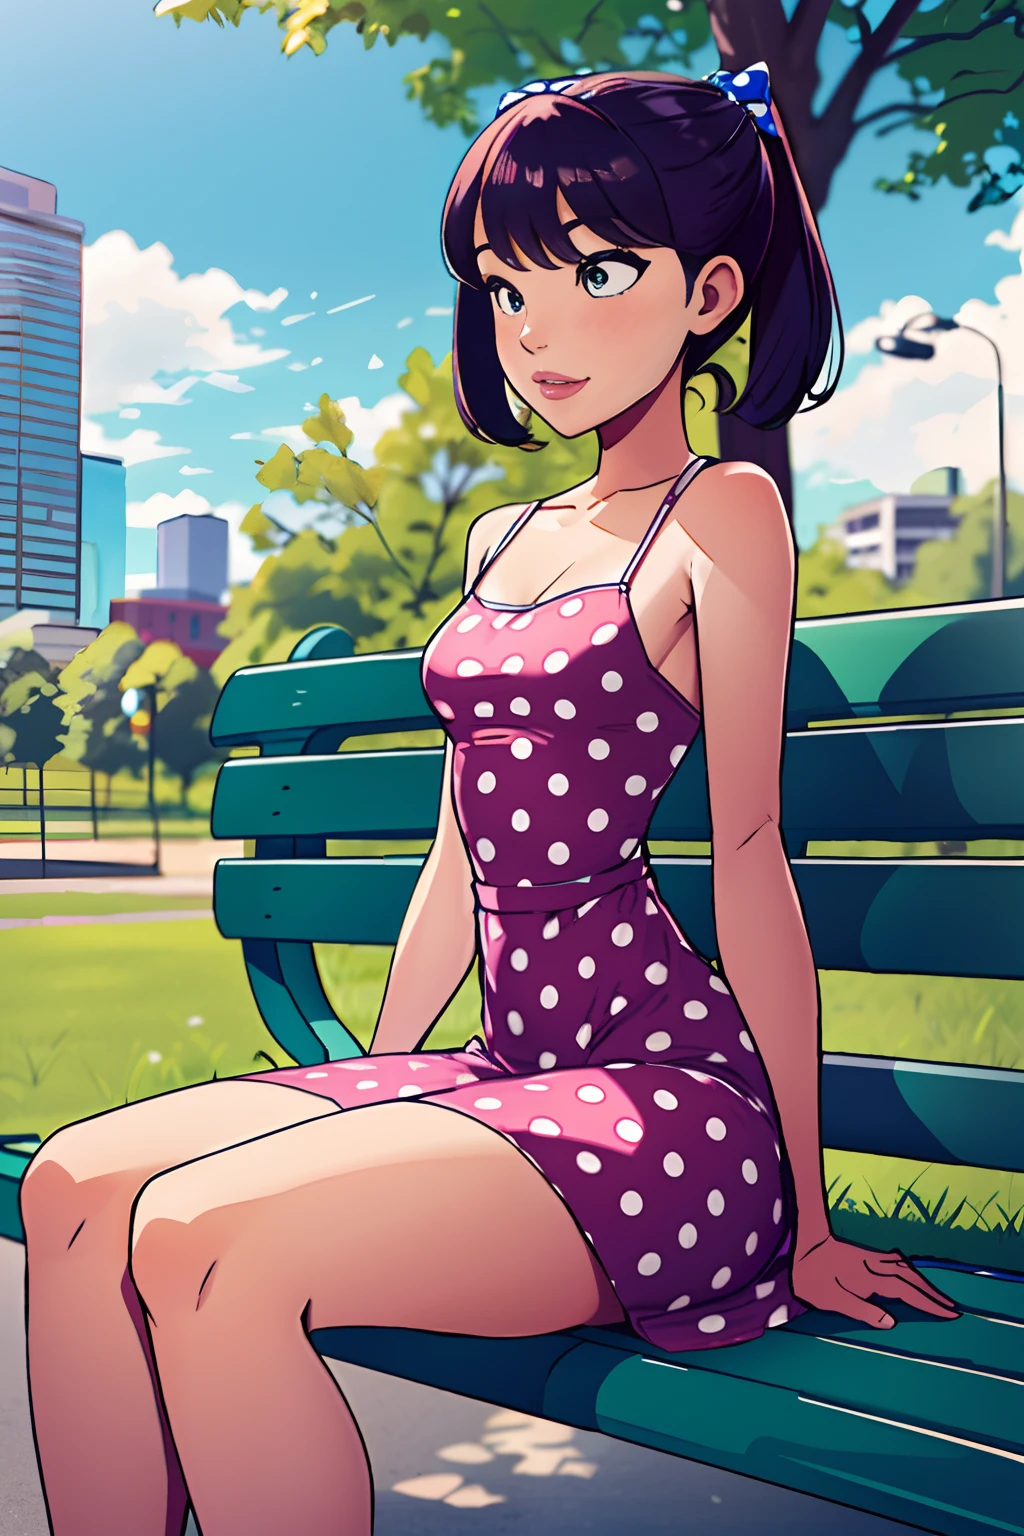 1 Mädchen, reife Frau, dicke Oberschenkel, kleine Brust,(Sommerkleid mit Punkten), Sitzen auf einer Bank im Park